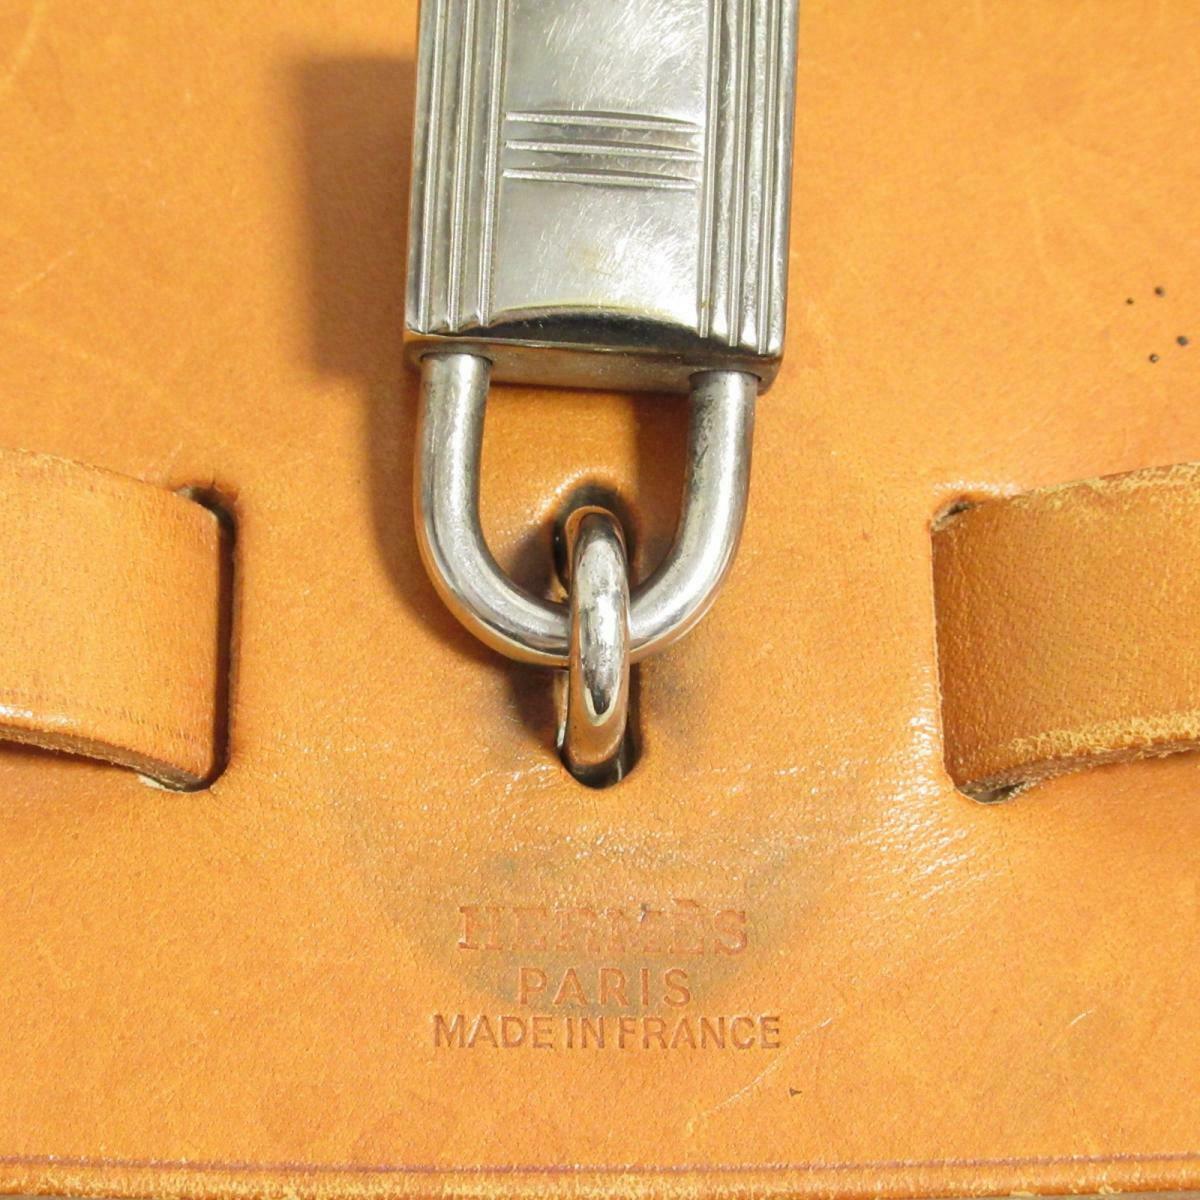 HERMES HERBAG MM 2 in 1 2way Hand Bag □C Brown Beige Toile H Leather 60383